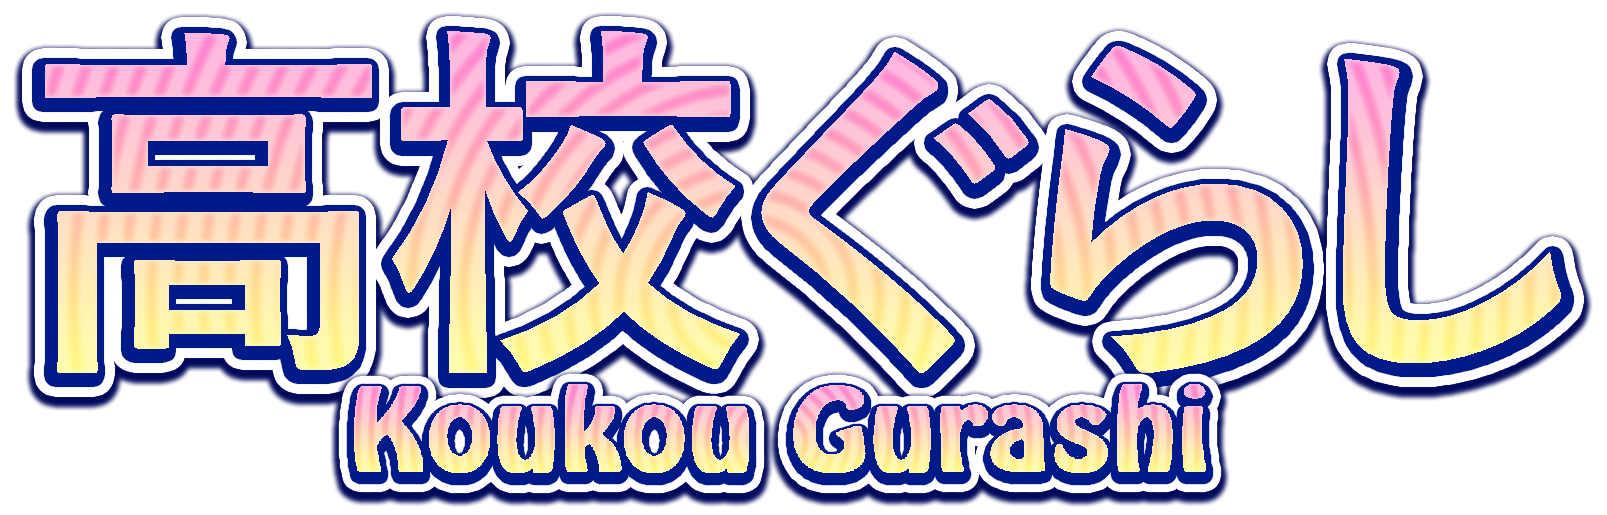 koukou gurashi download 2020